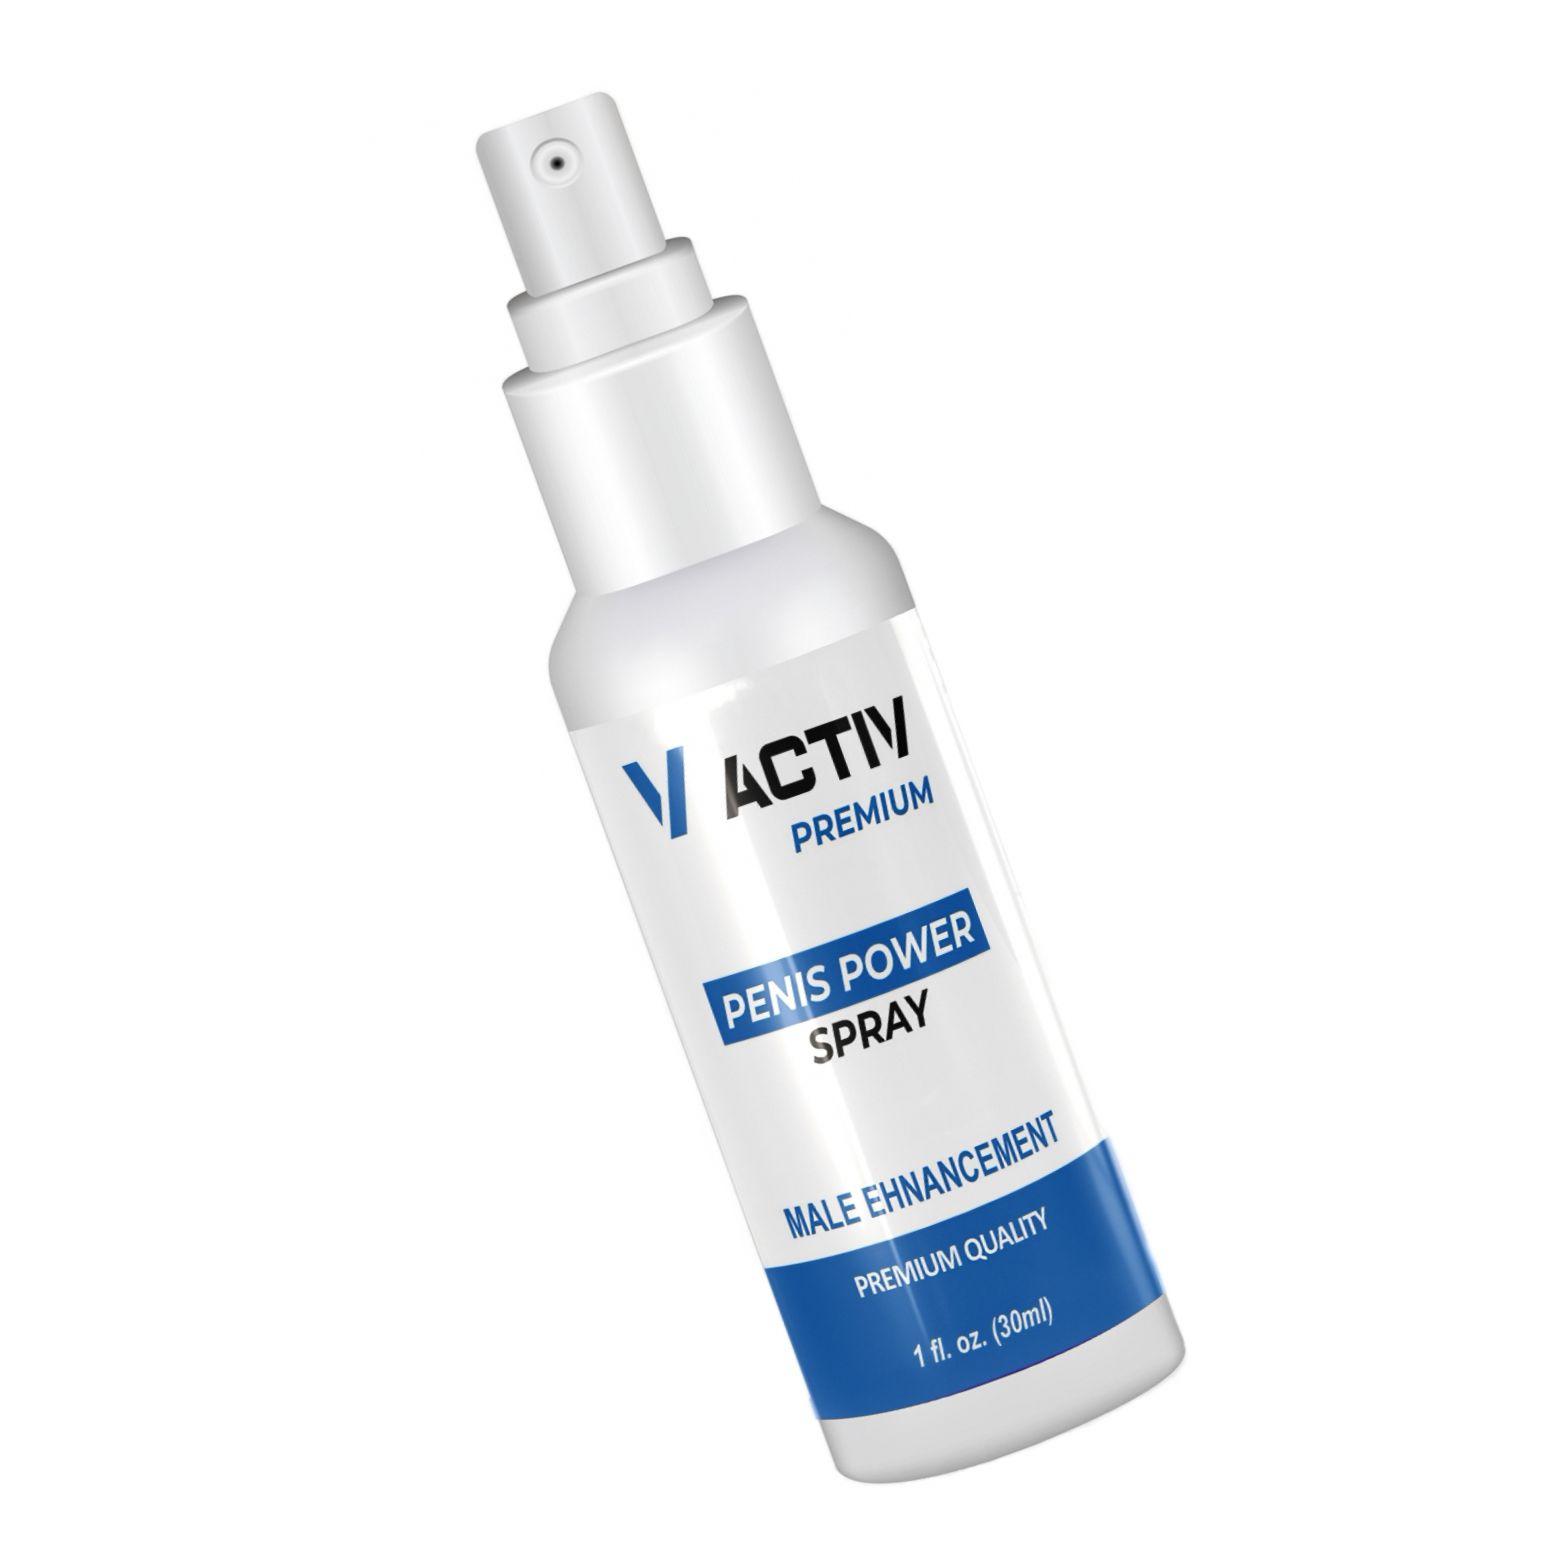 V-Activ Premium Spray